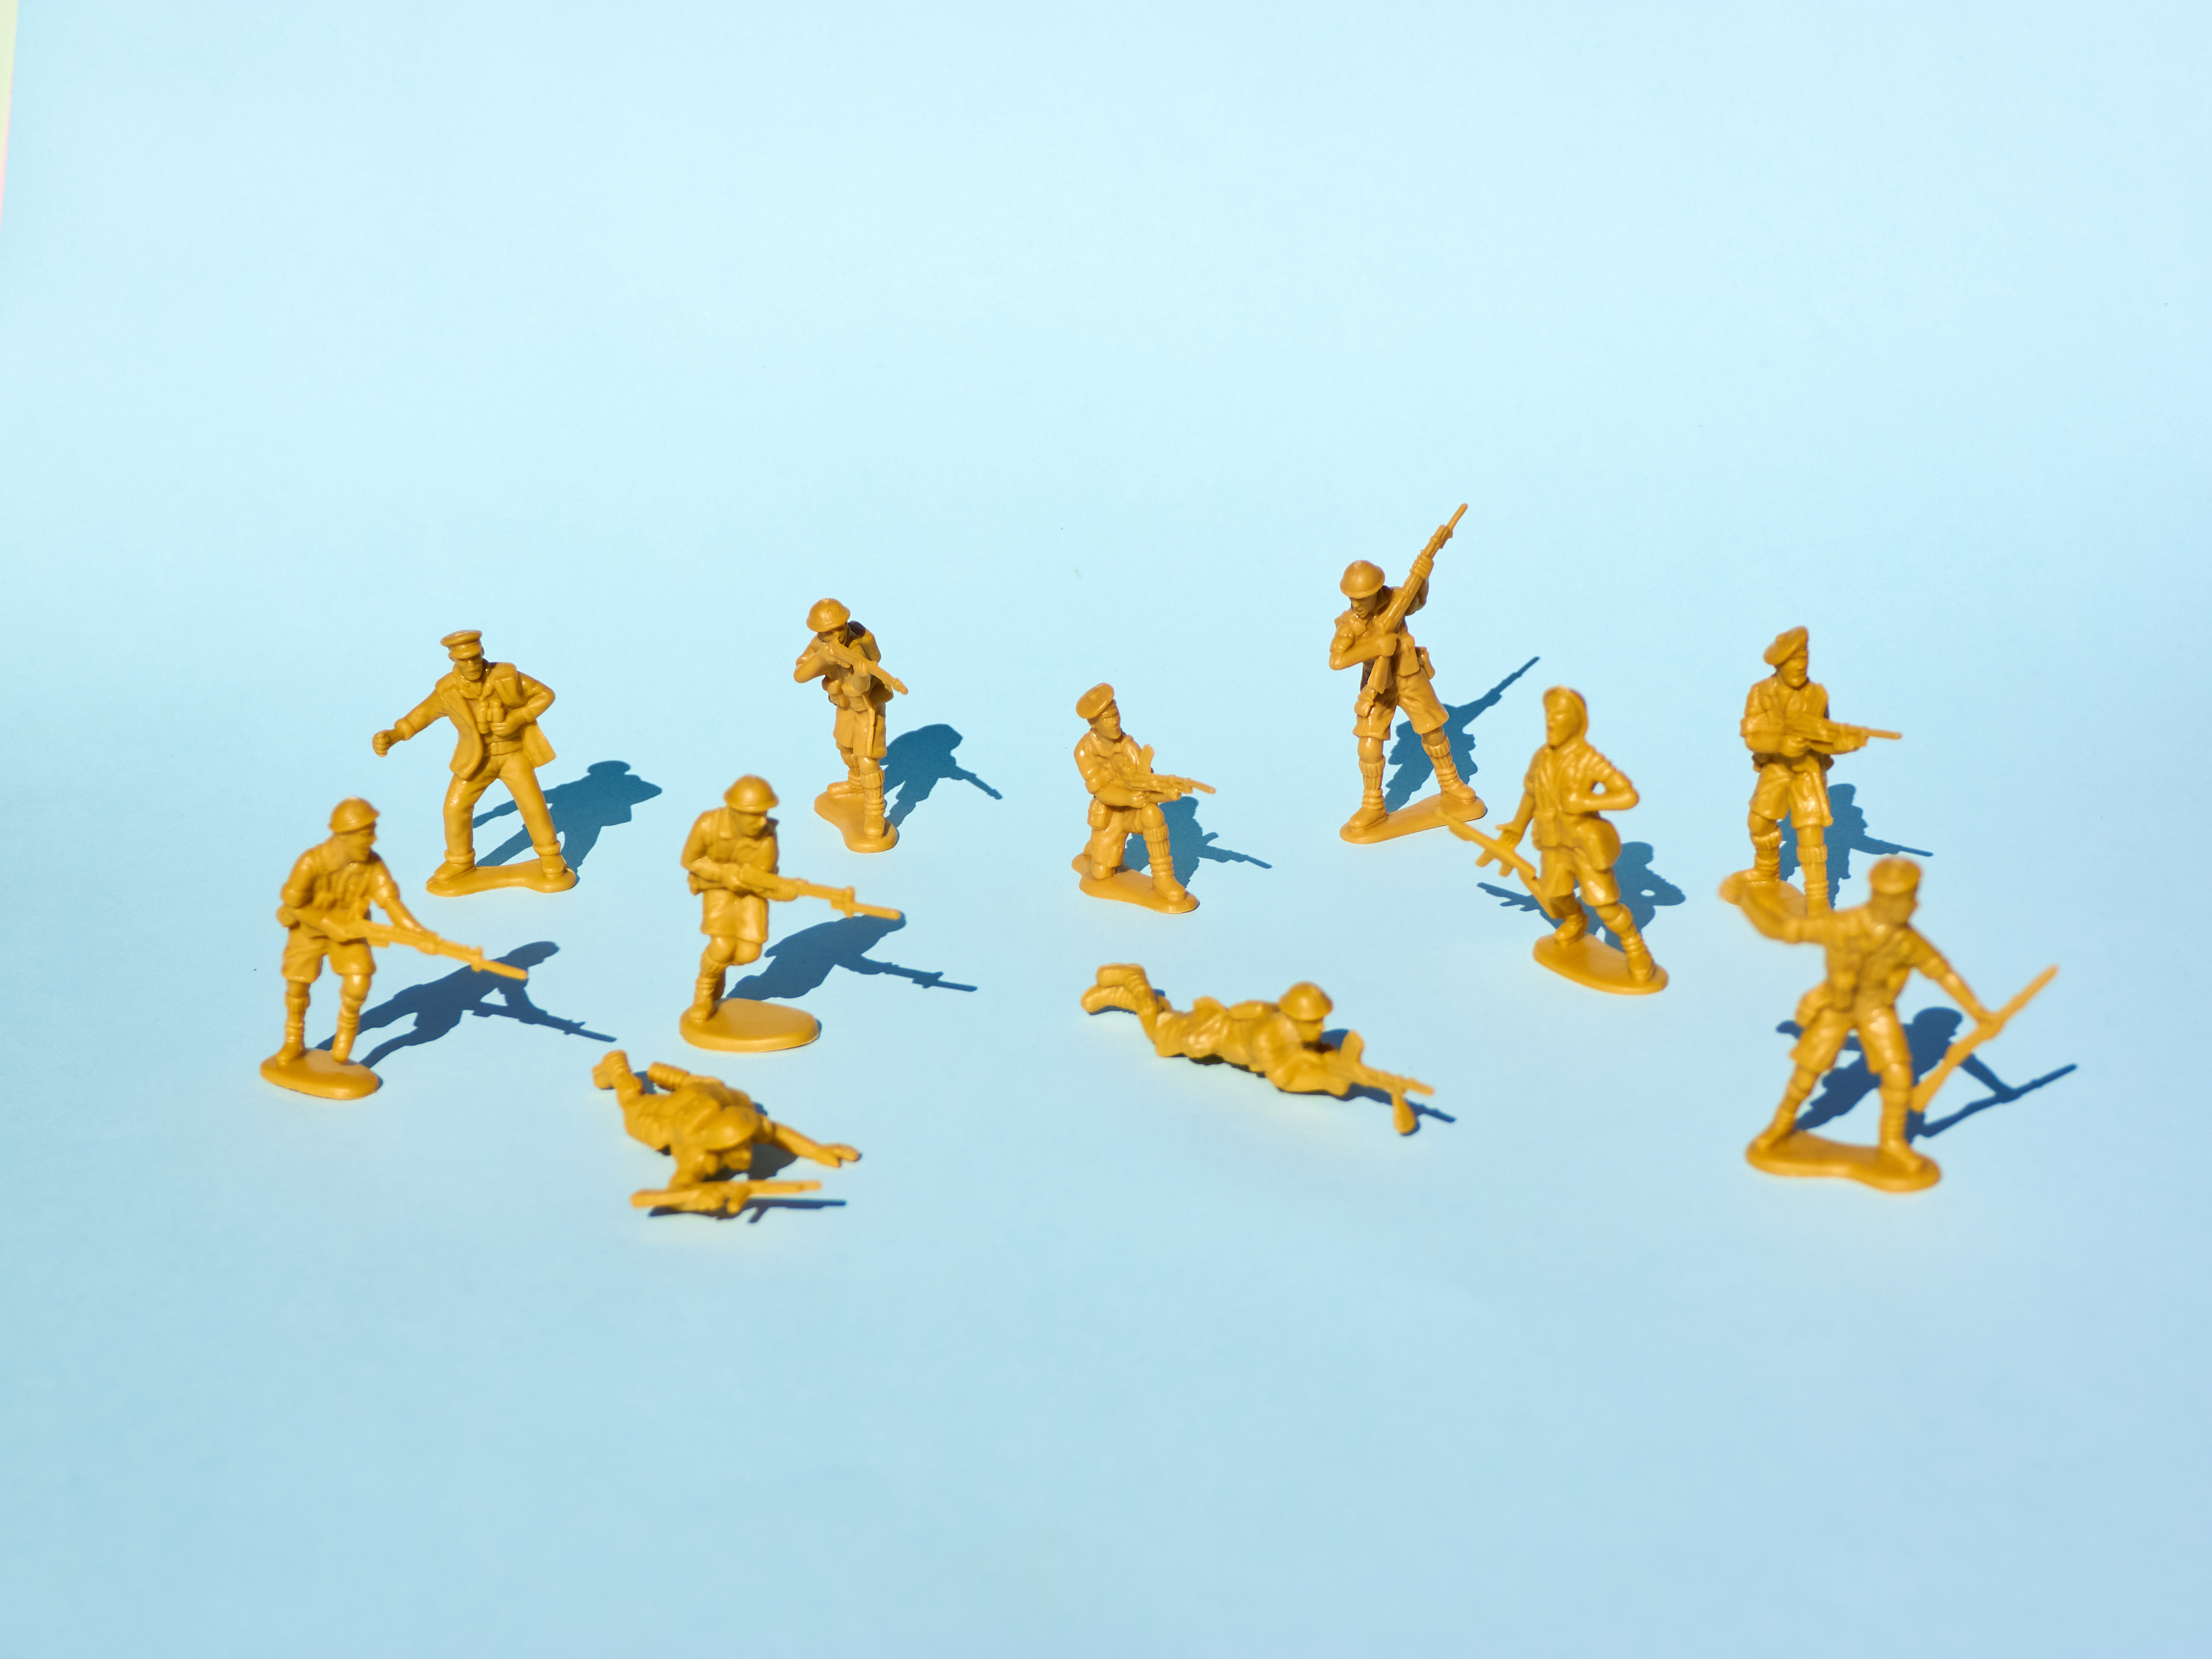 青色の背景に、互いに銃を向けている黄色のプラスチック製のおもちゃの兵隊のグループの画像。